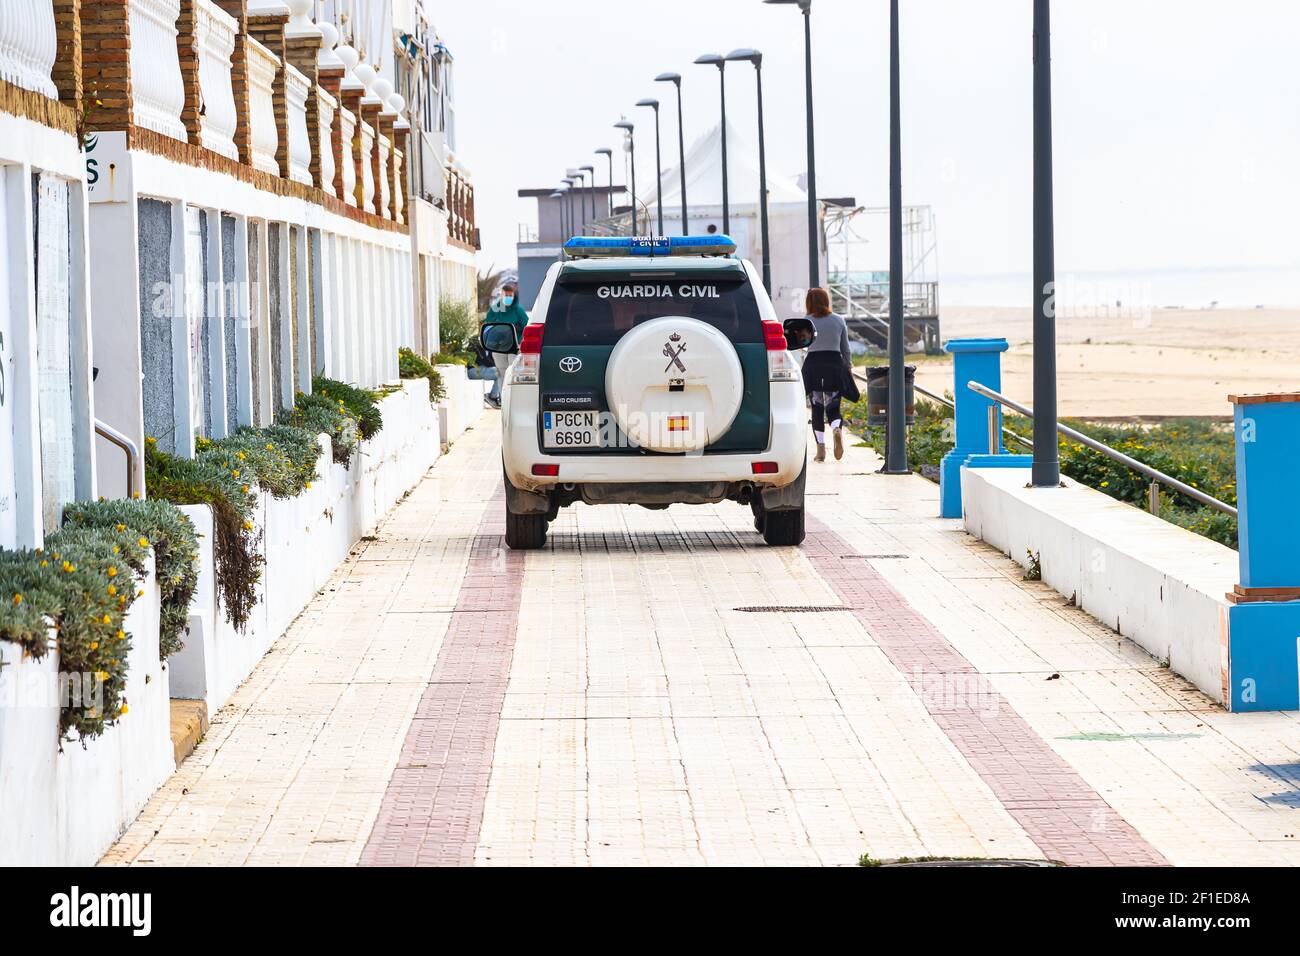 Matalascañas, Huelva, Espagne - 7 mars 2021: Guardia voiture civile patrouilant sur la promenade de la plage de Matalascañas Banque D'Images